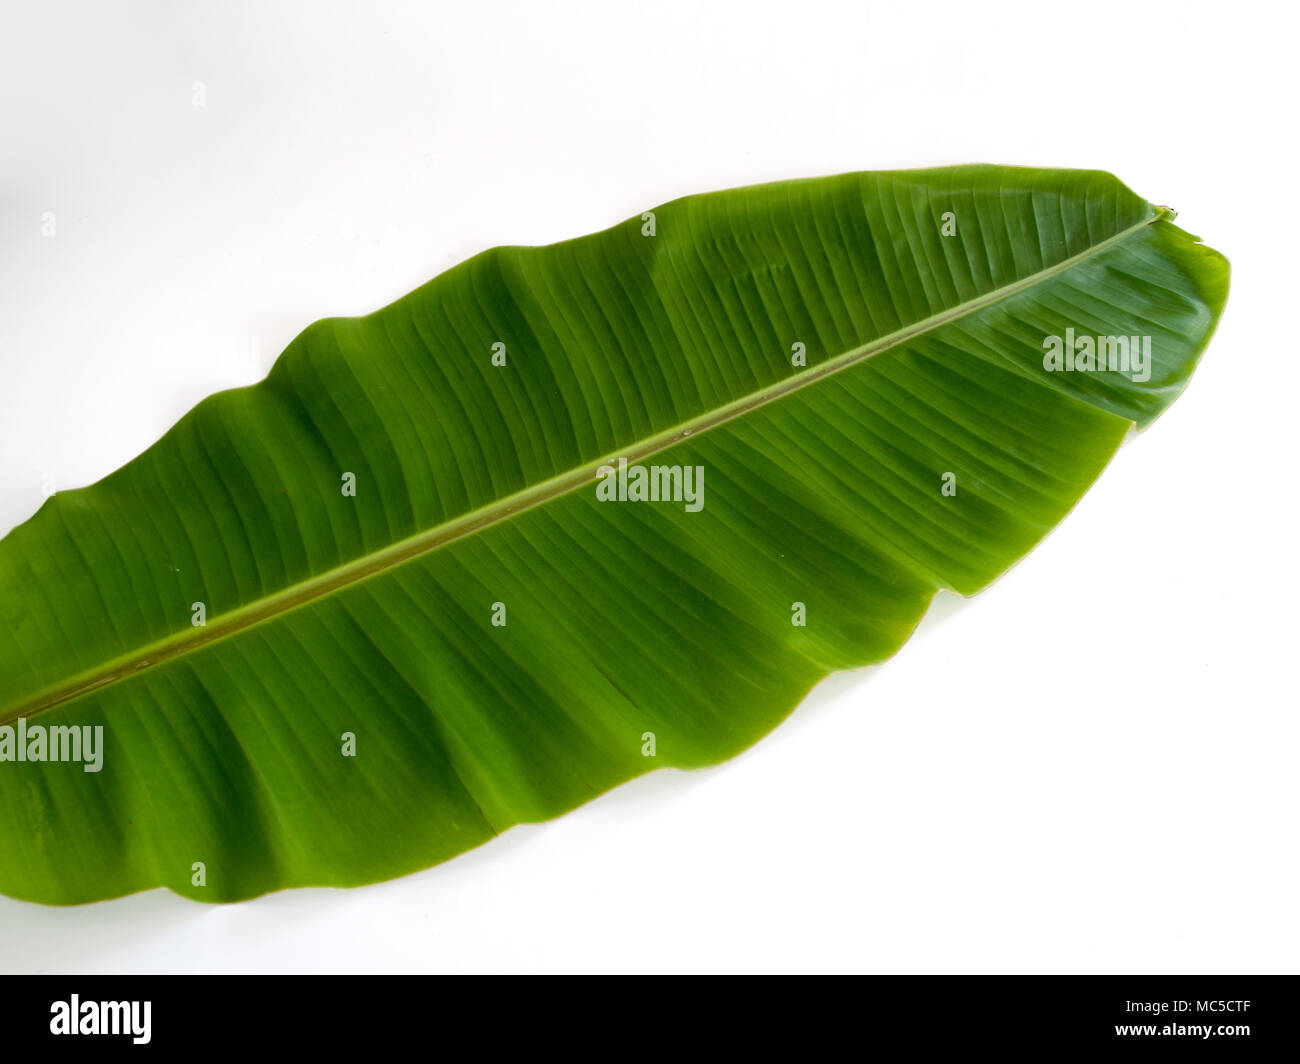 Banana Leaf, die Blätter der Bananenstaude Wir bringen kann viele Anwendungen wie Behälter für Lebensmittel oder bringen. Stockfoto